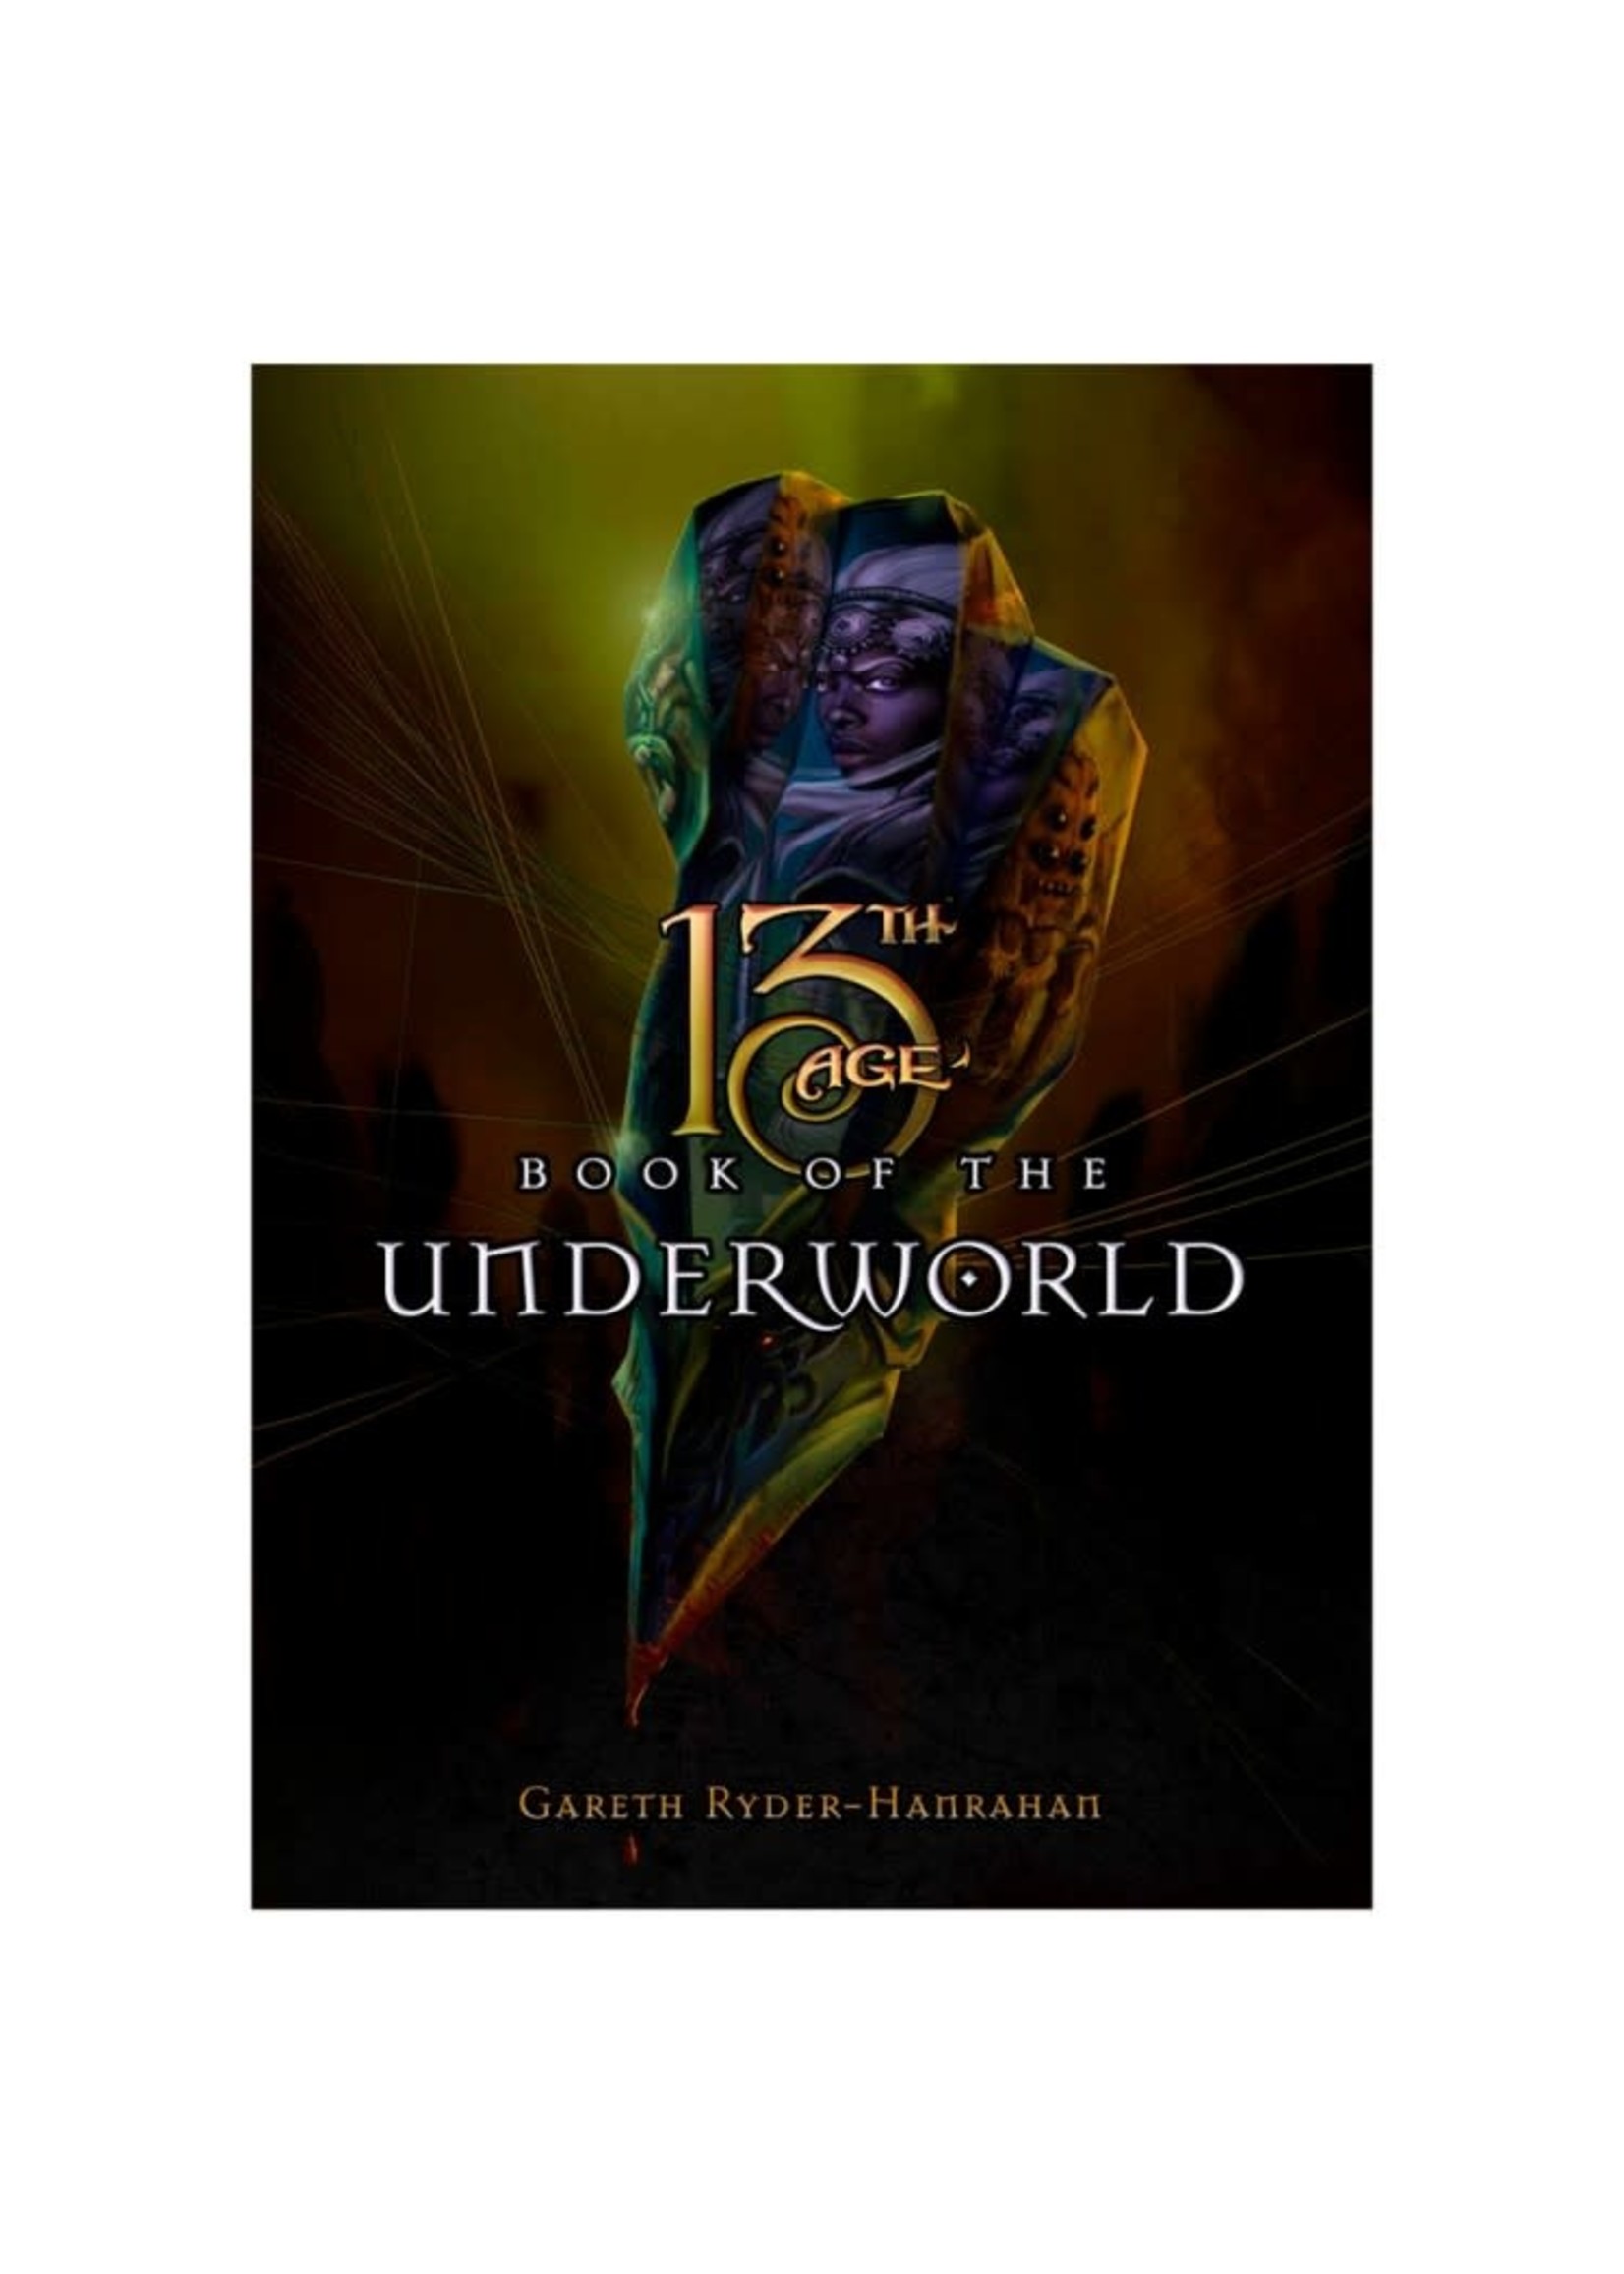 Pelgrane Press 13th Age Book of the Underworld